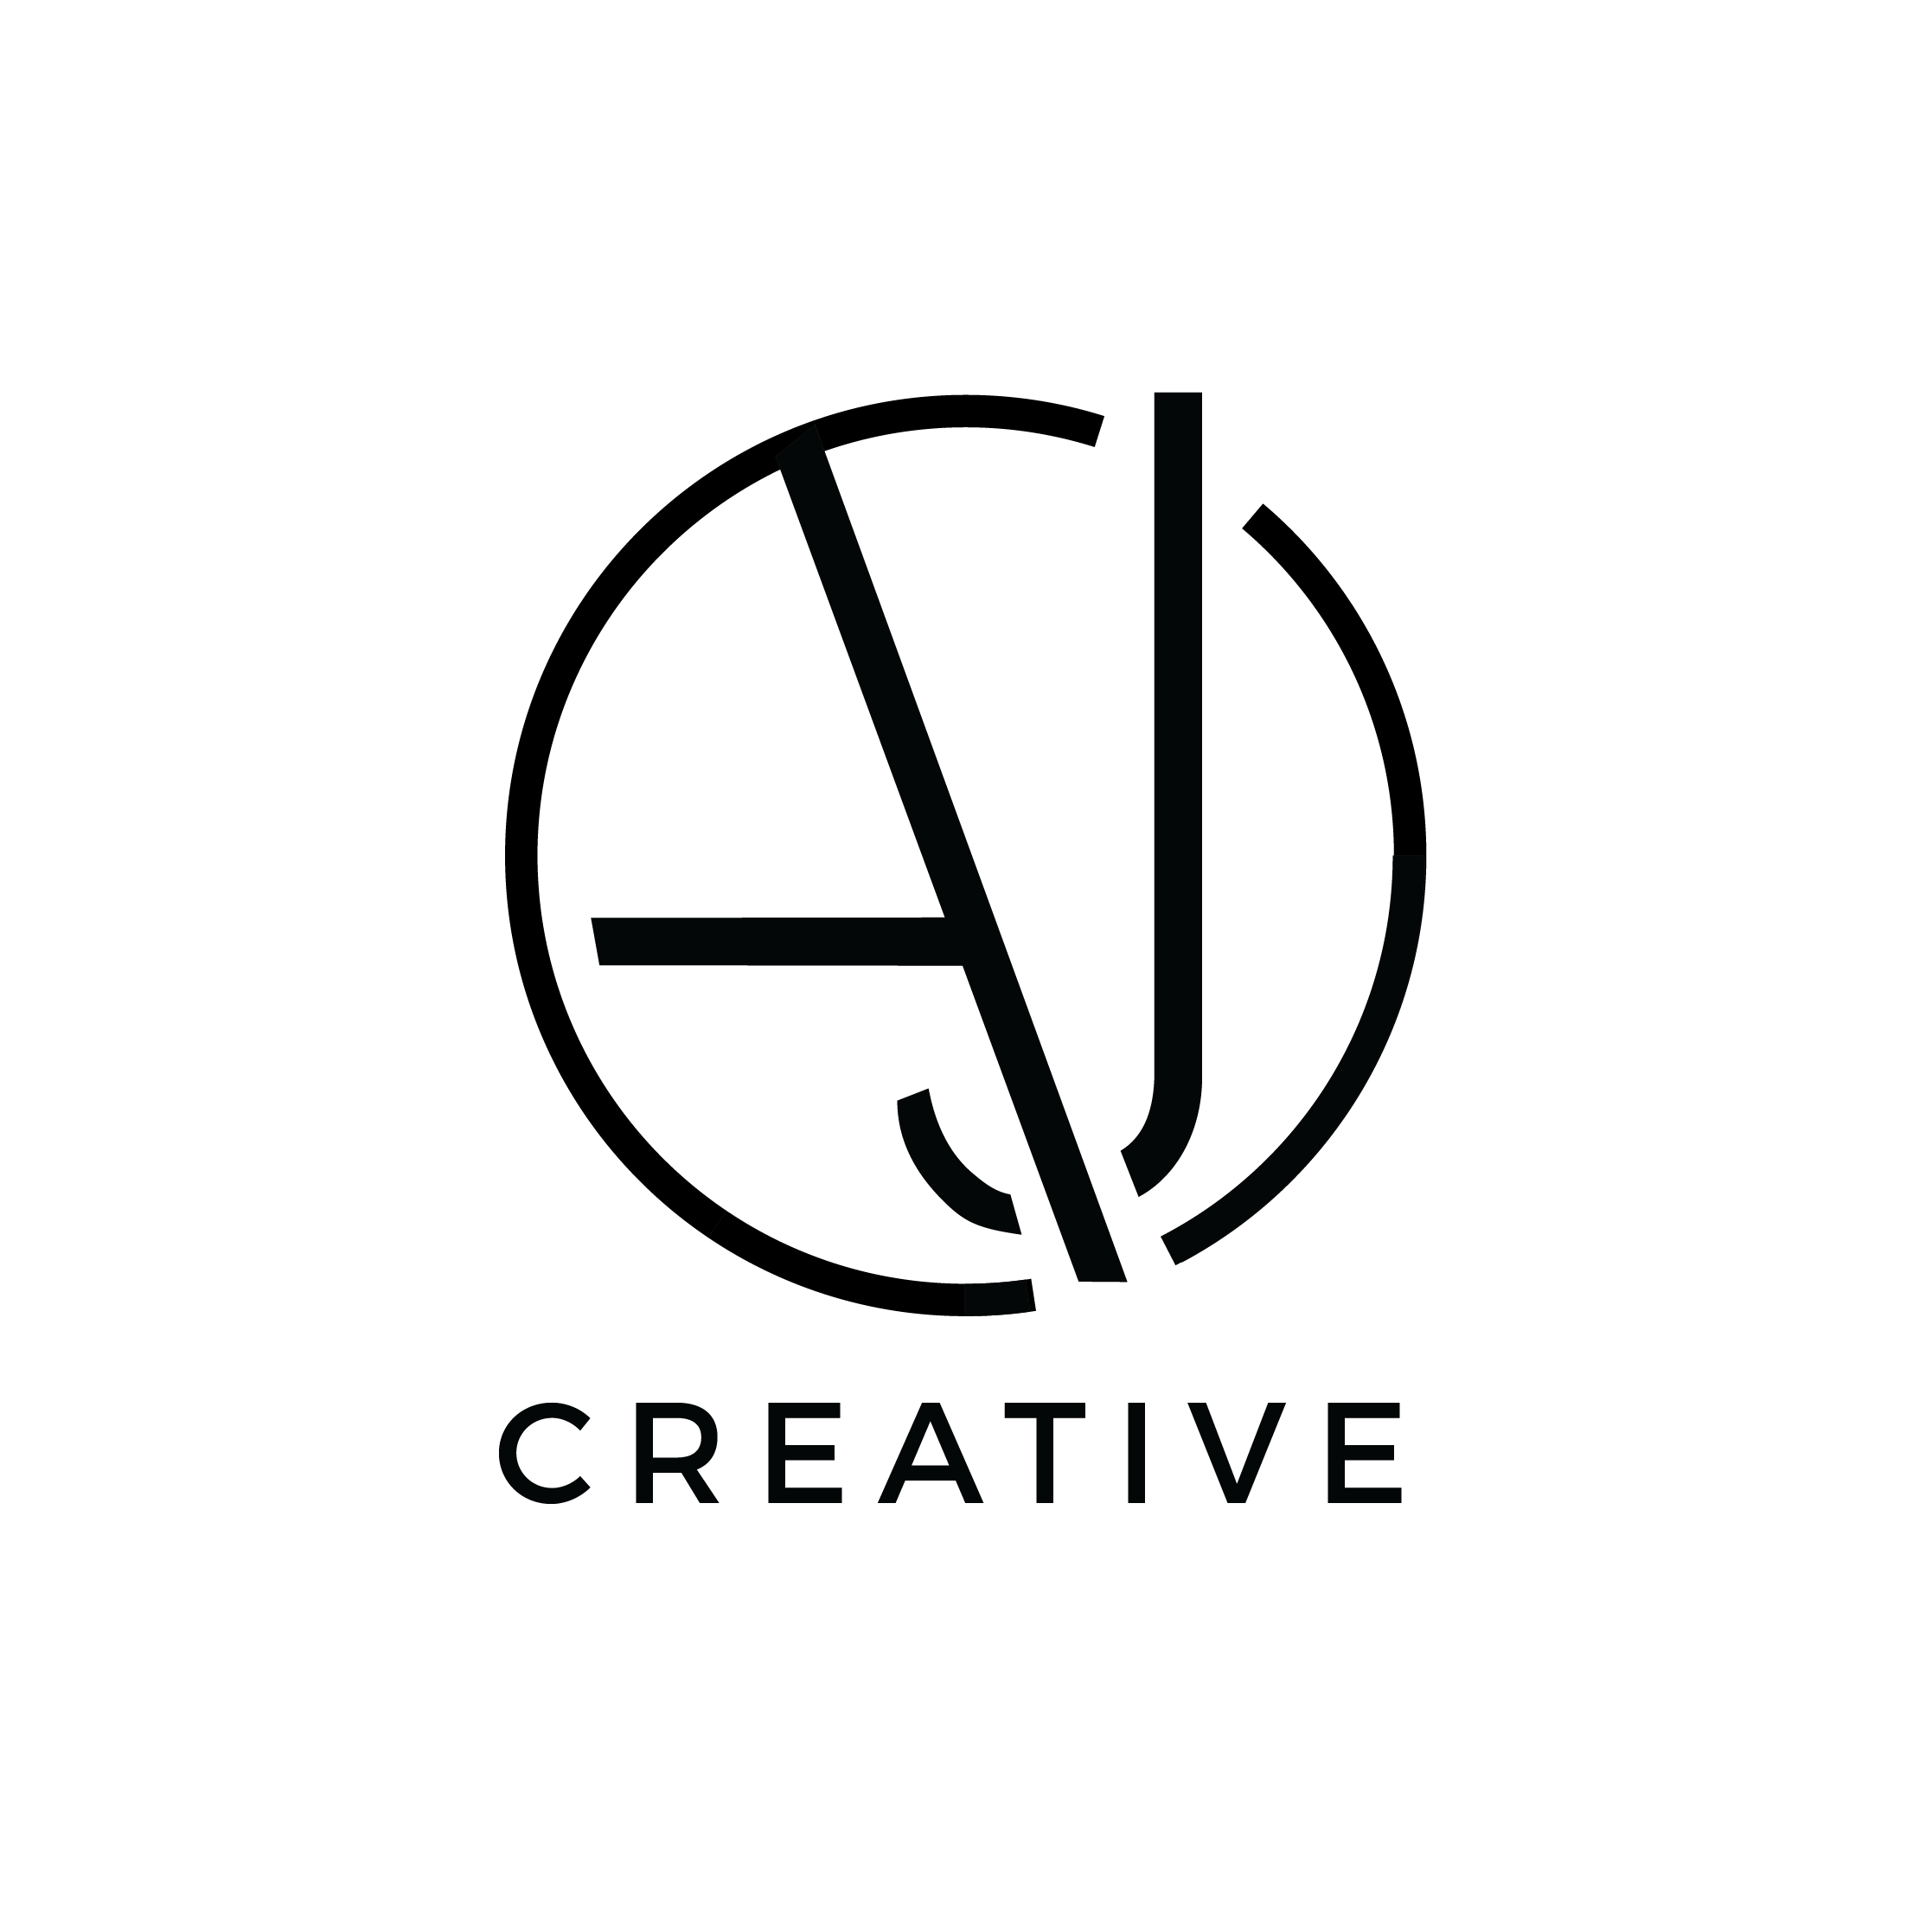 AJ Logo - AJ Creative Logo 5